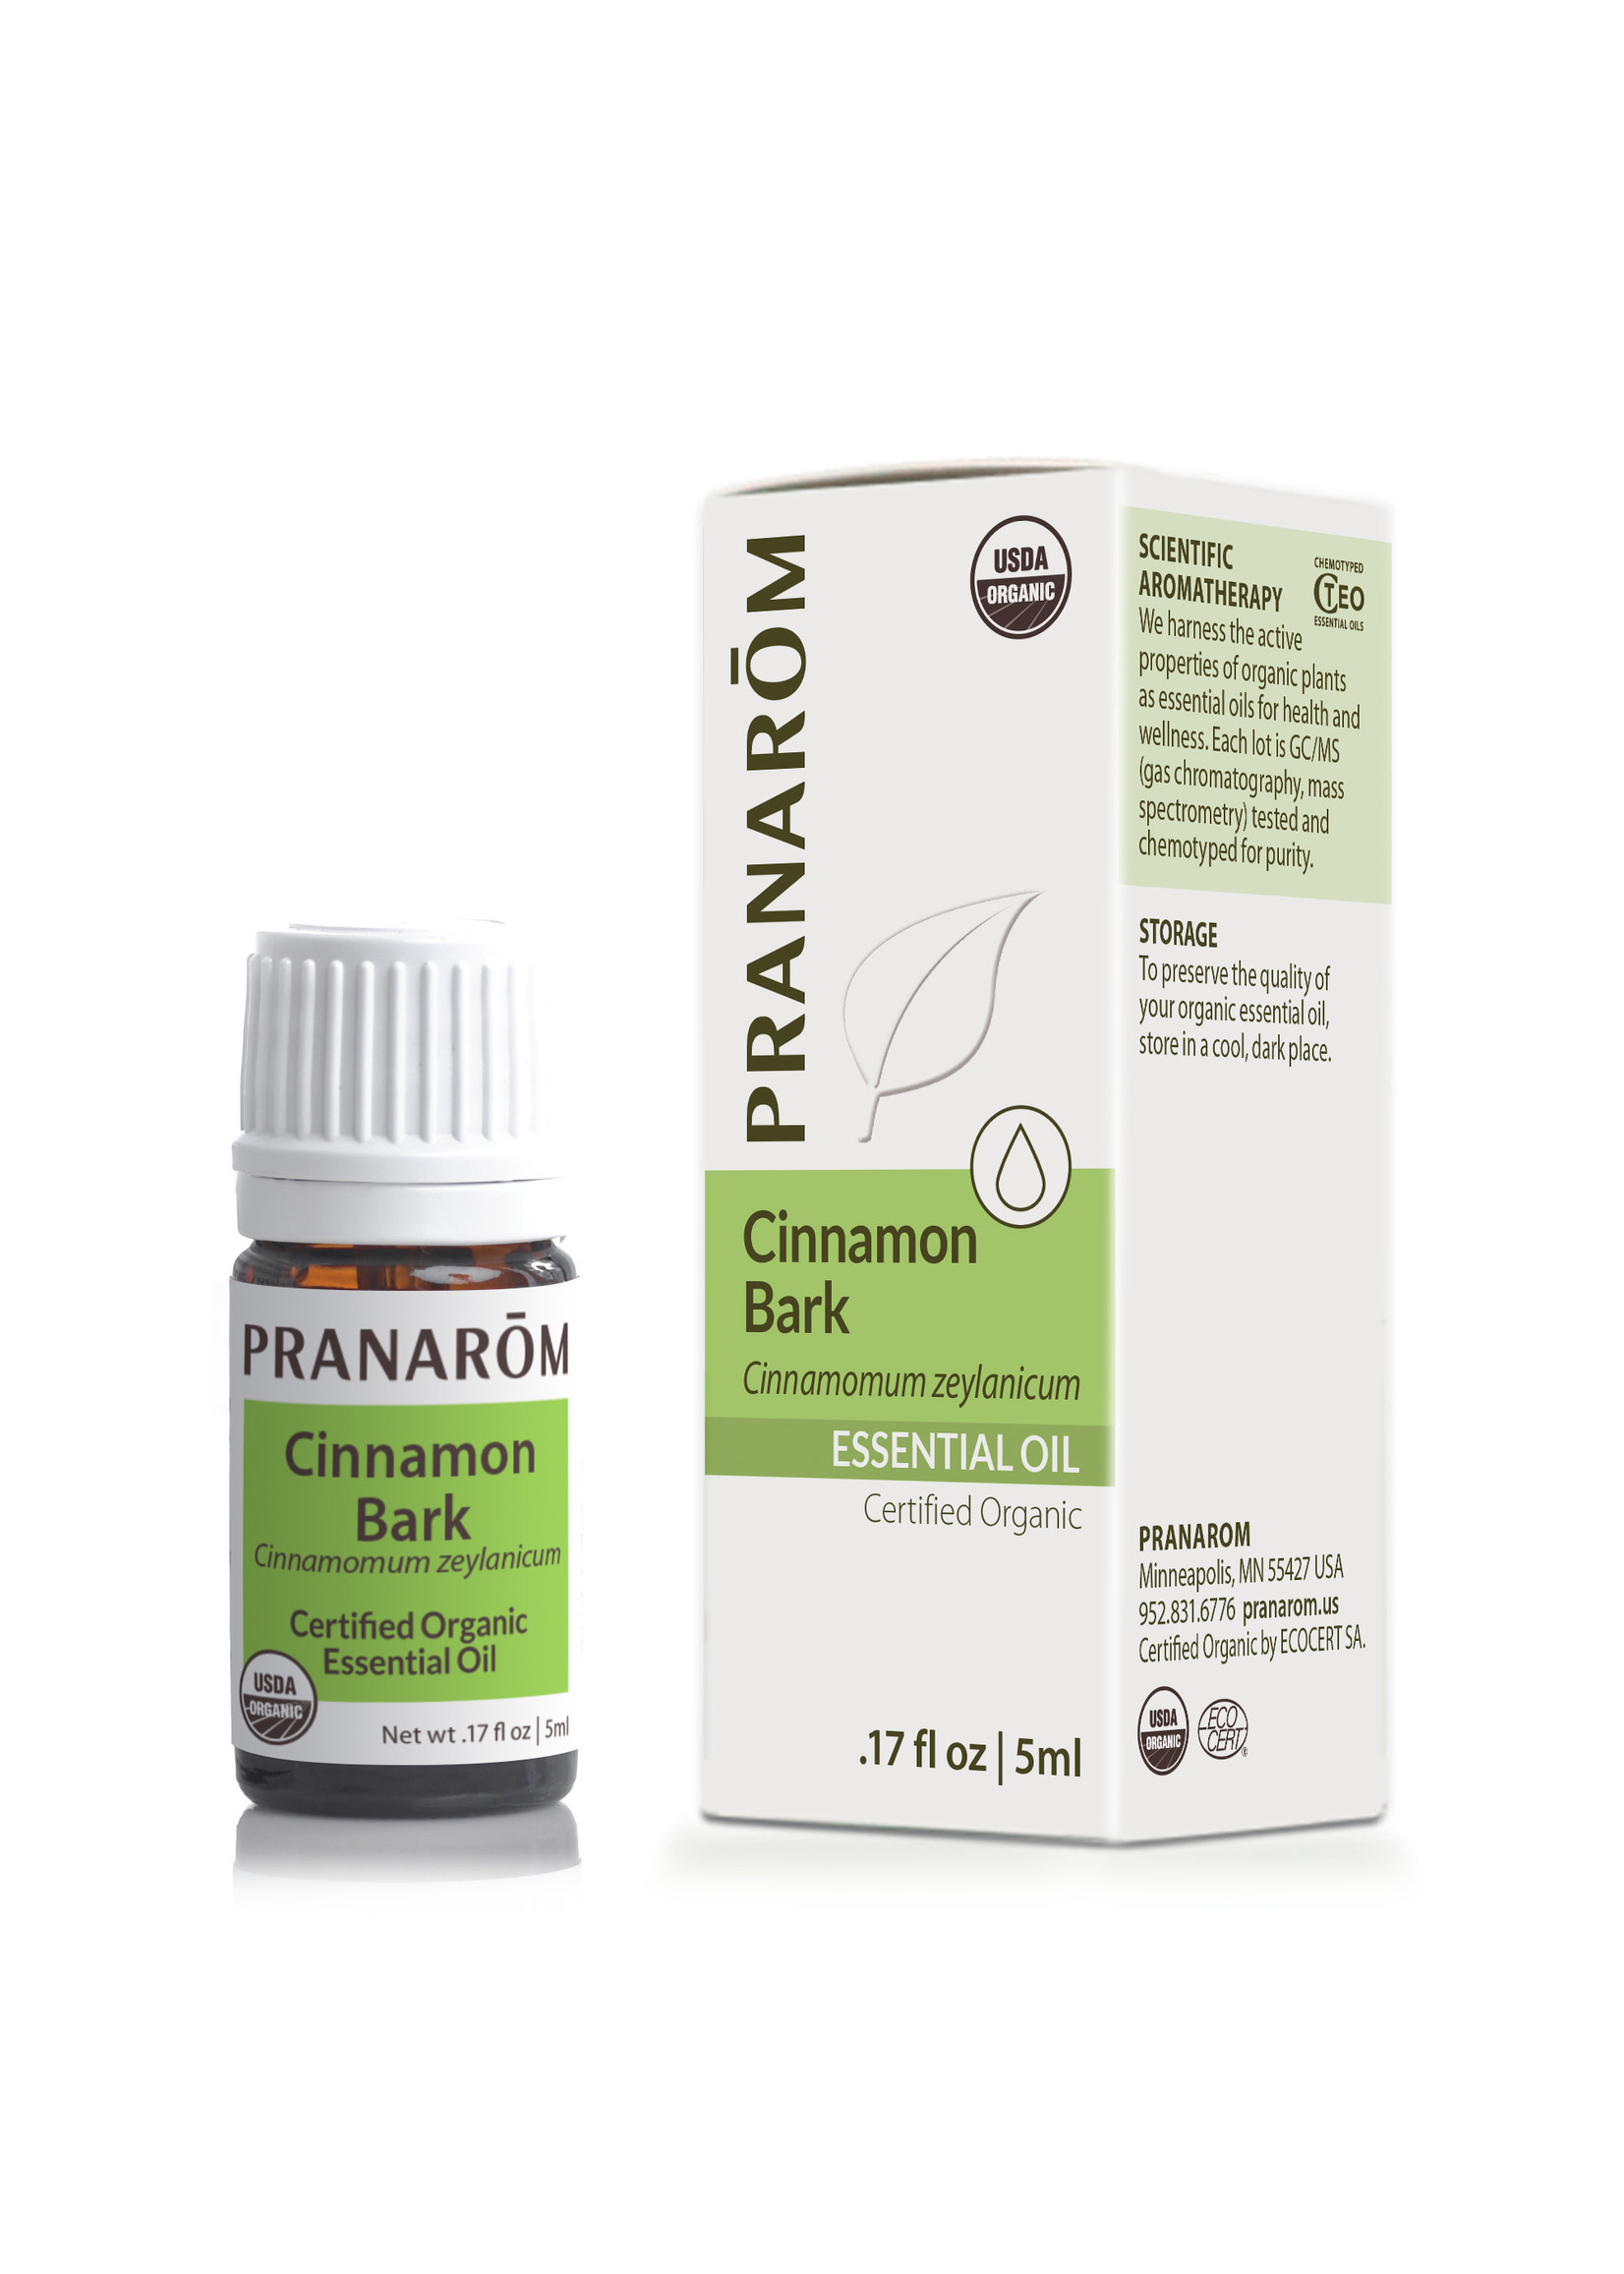 Pranoram Cinnamon Bark 5ml (Cinnamomum zeylanicum)